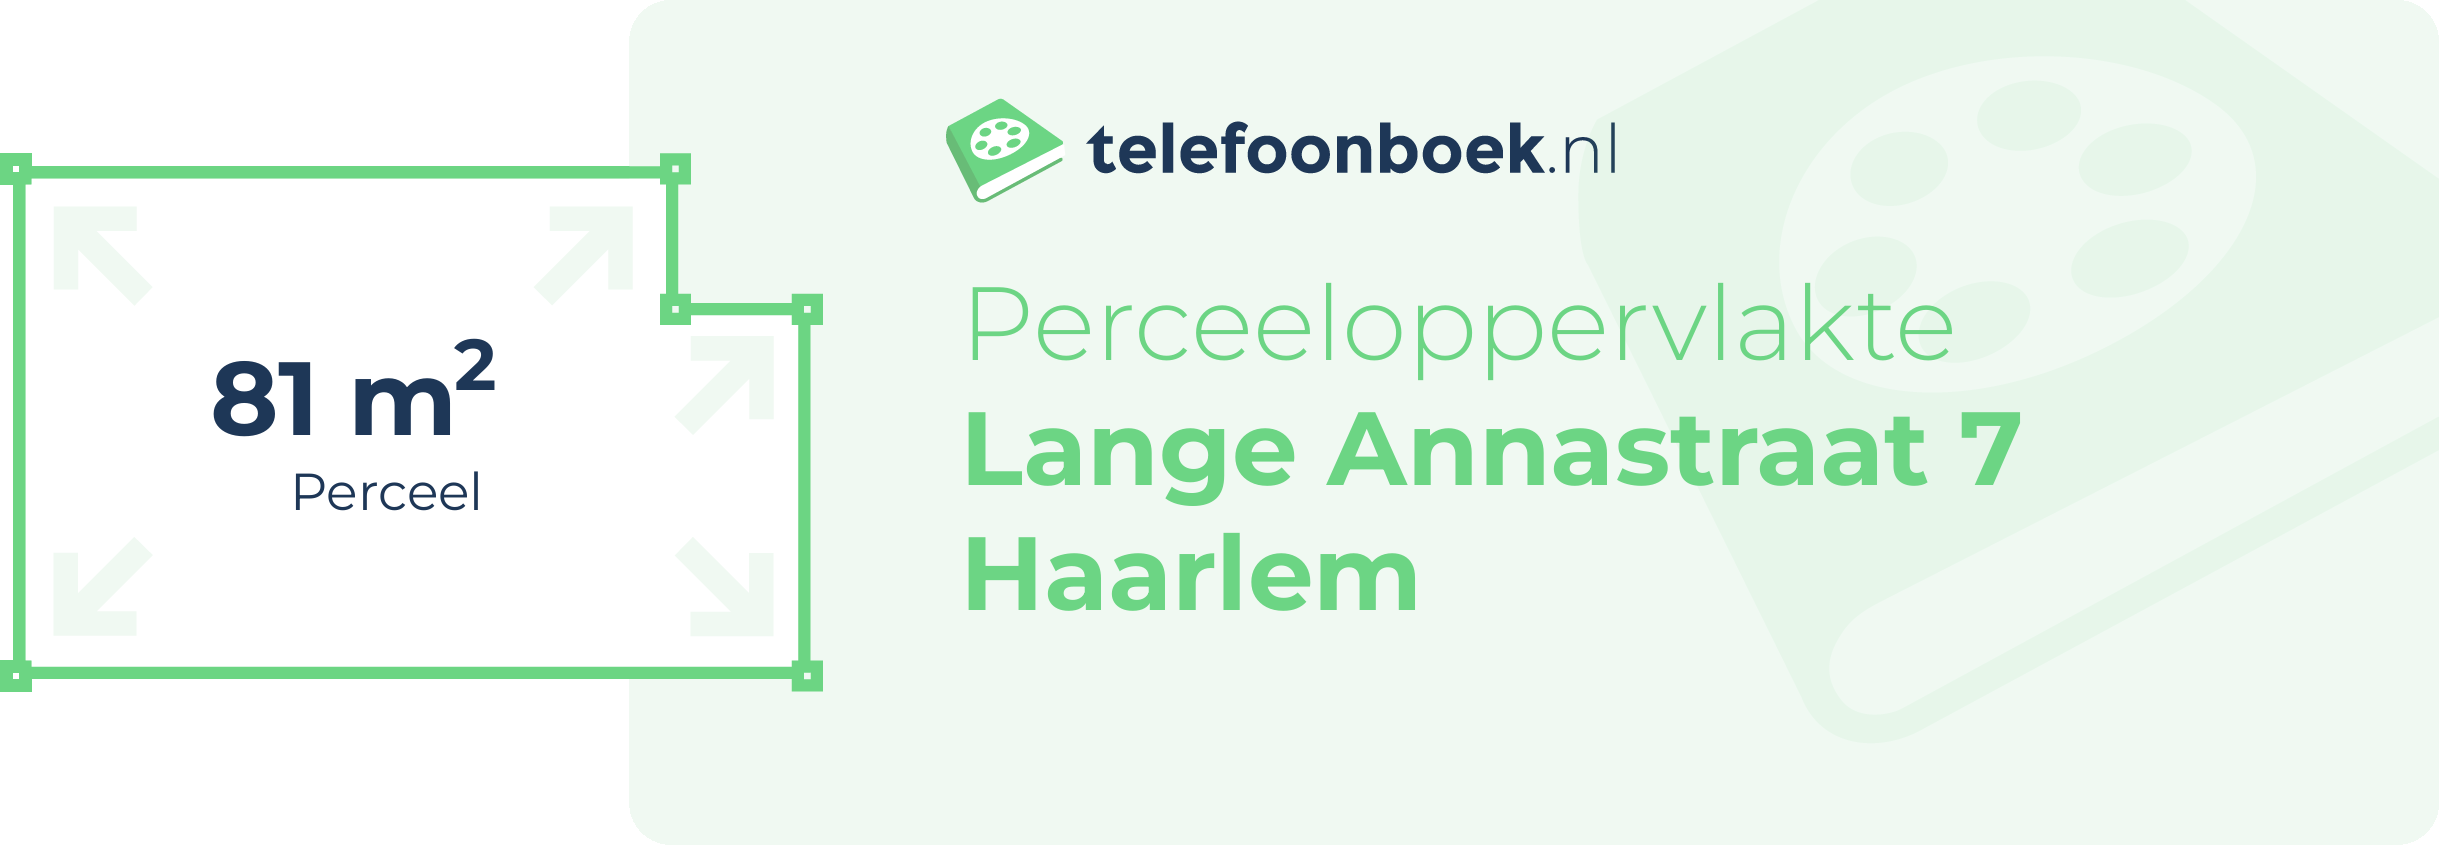 Perceeloppervlakte Lange Annastraat 7 Haarlem